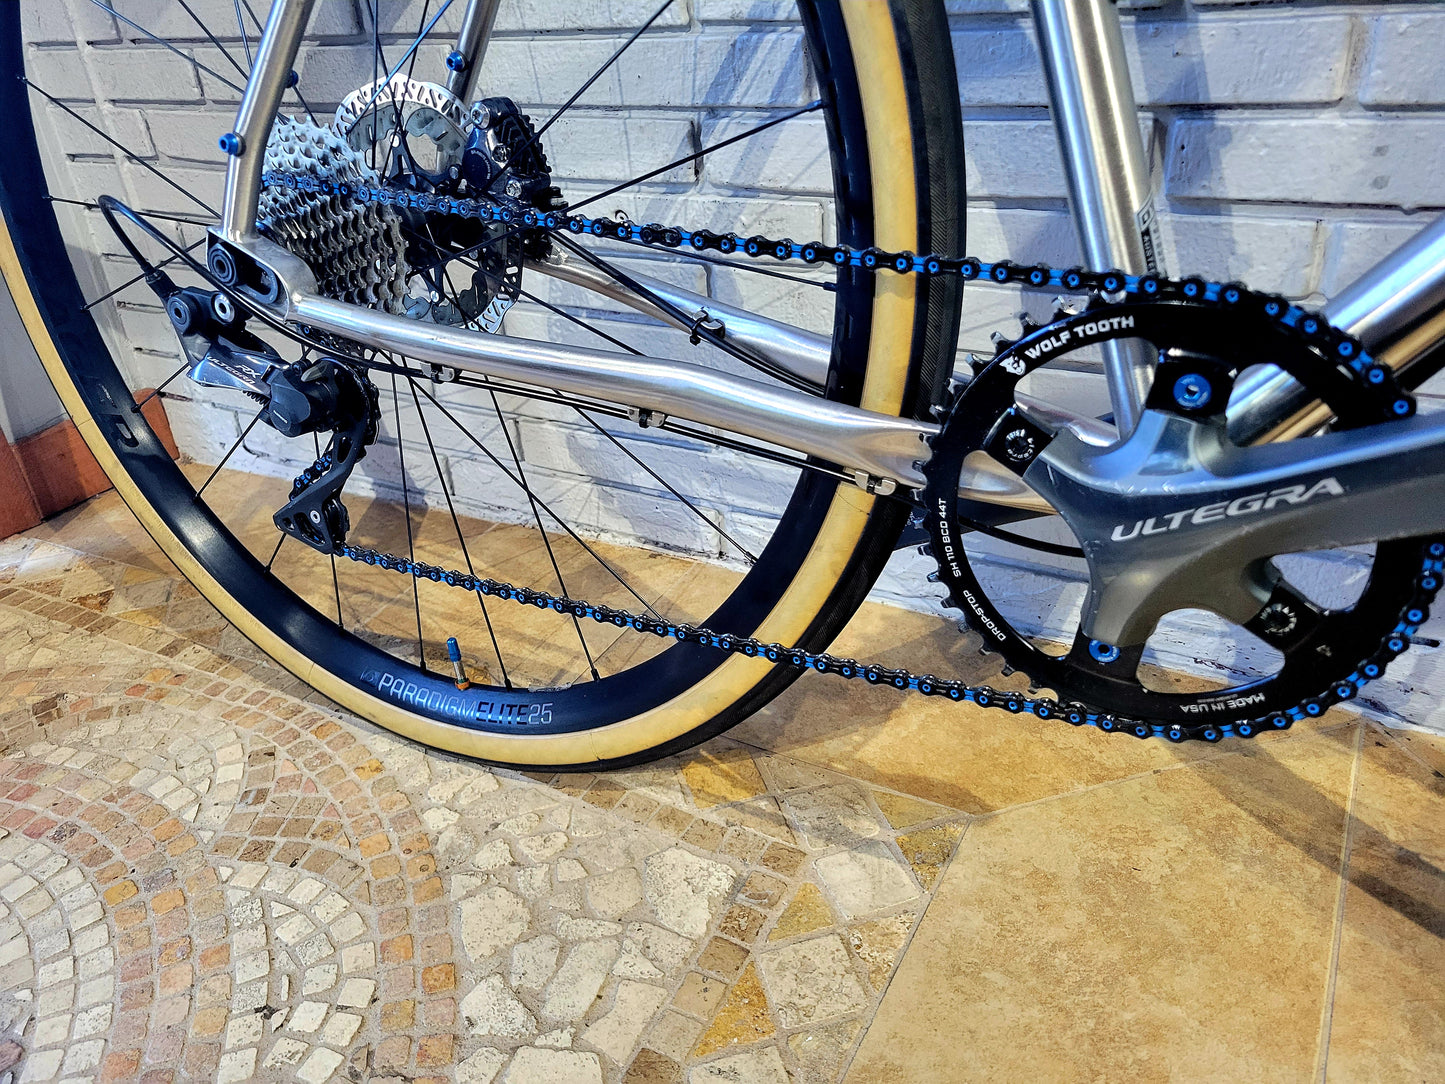 Otso Warakin Stainless (58cm) Gravel Bike